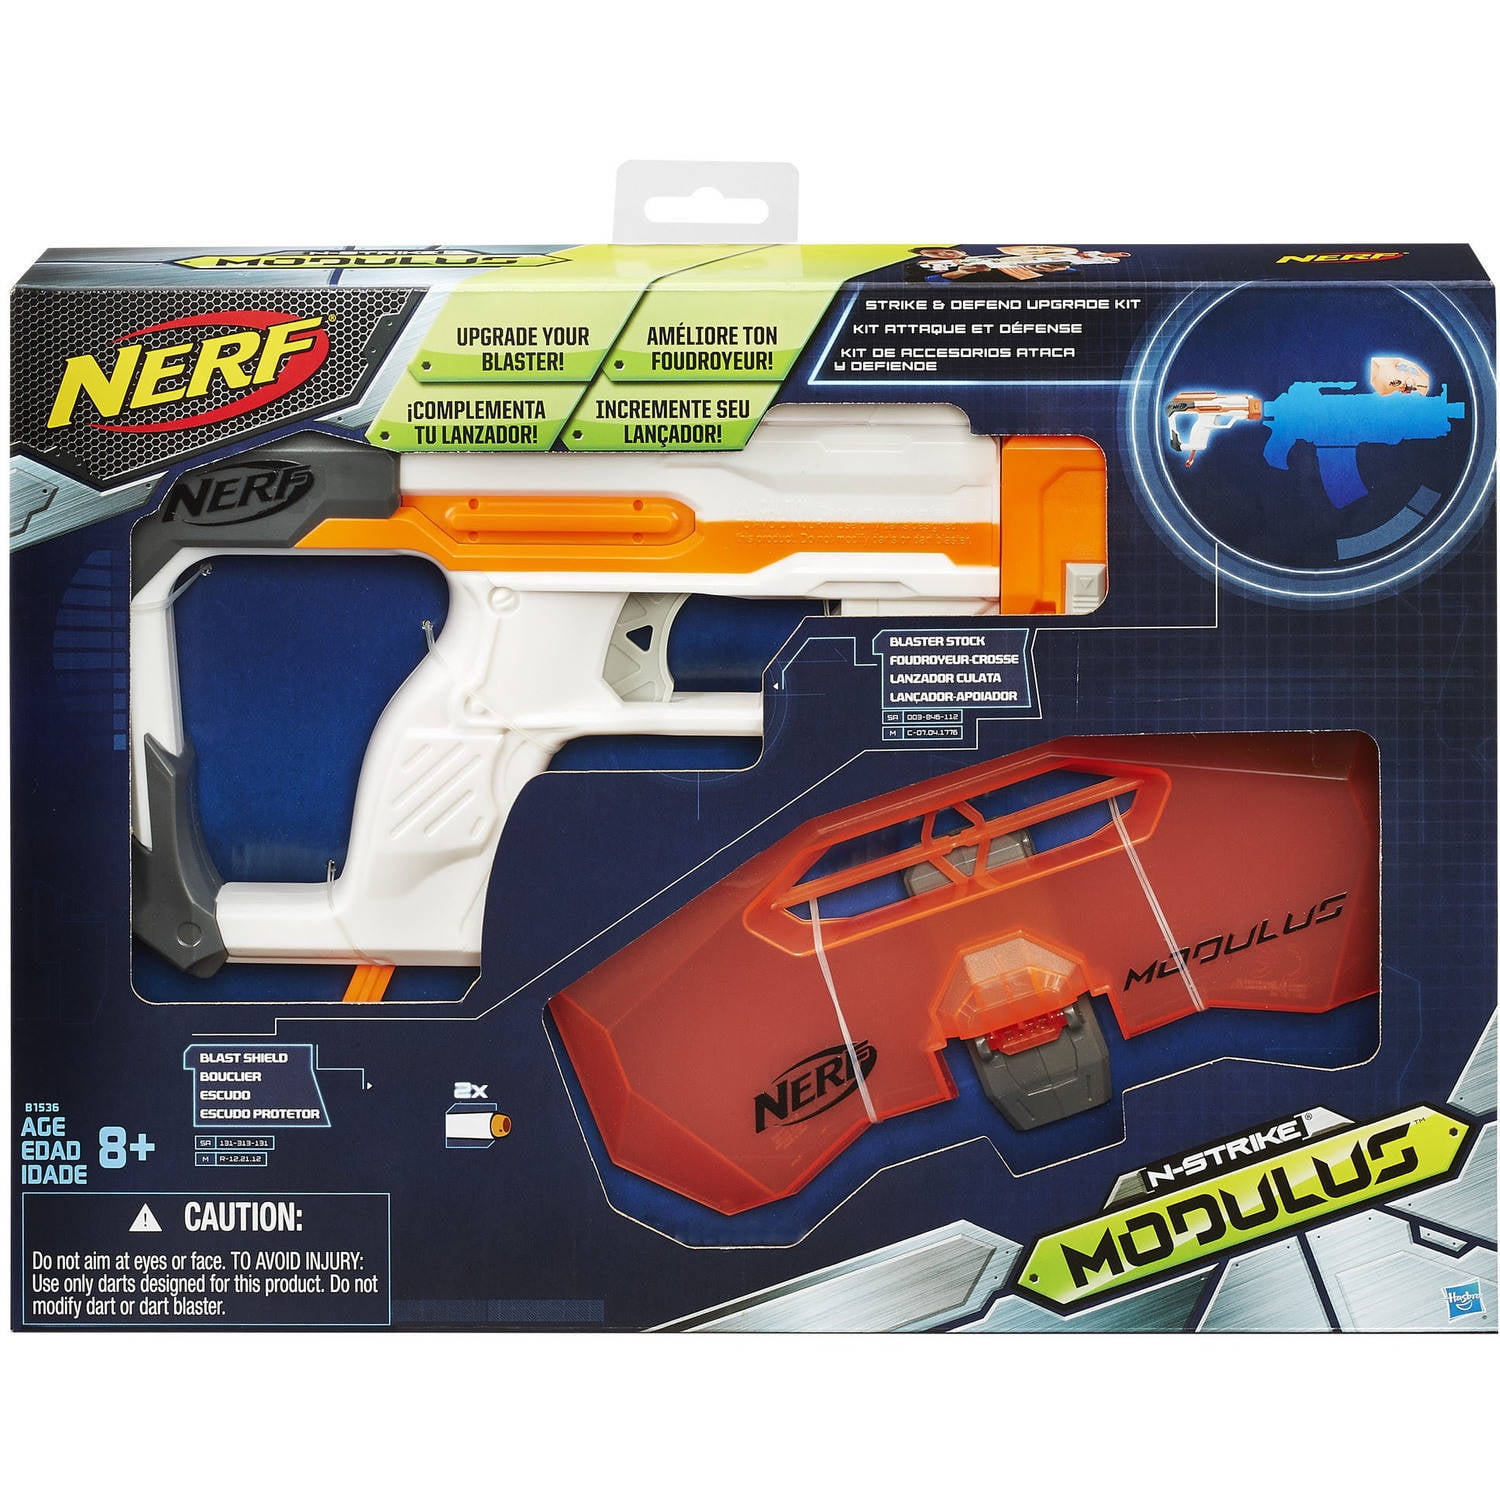 Pick up the impressive Nerf Longstrike Modulus Blaster for just